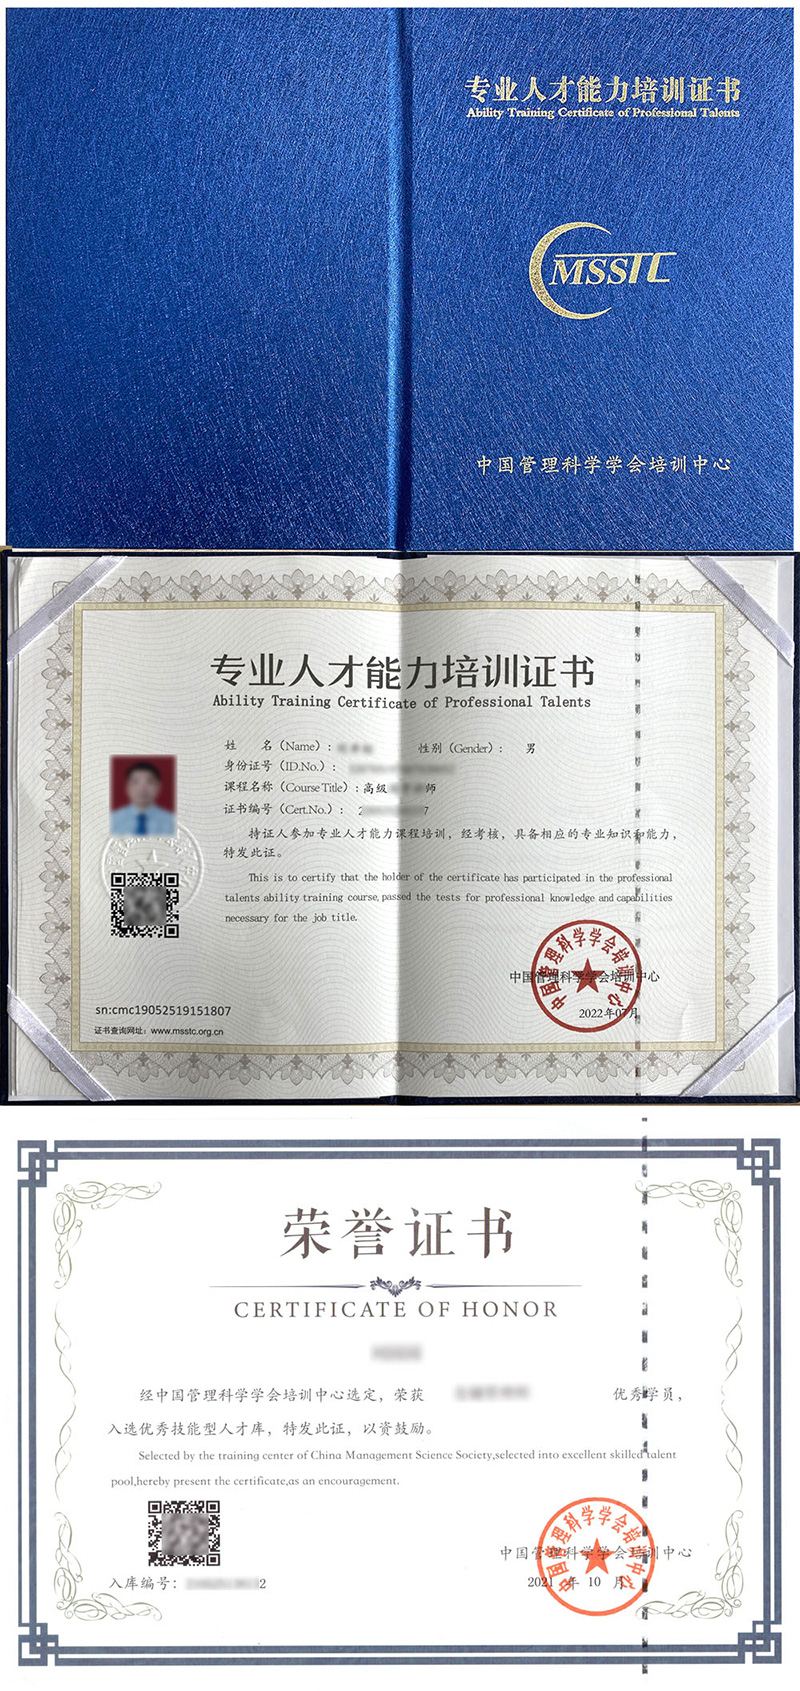 中国管理科学学会培训中心 专业人才能力培训证书 机器人专业工程师证证书样本